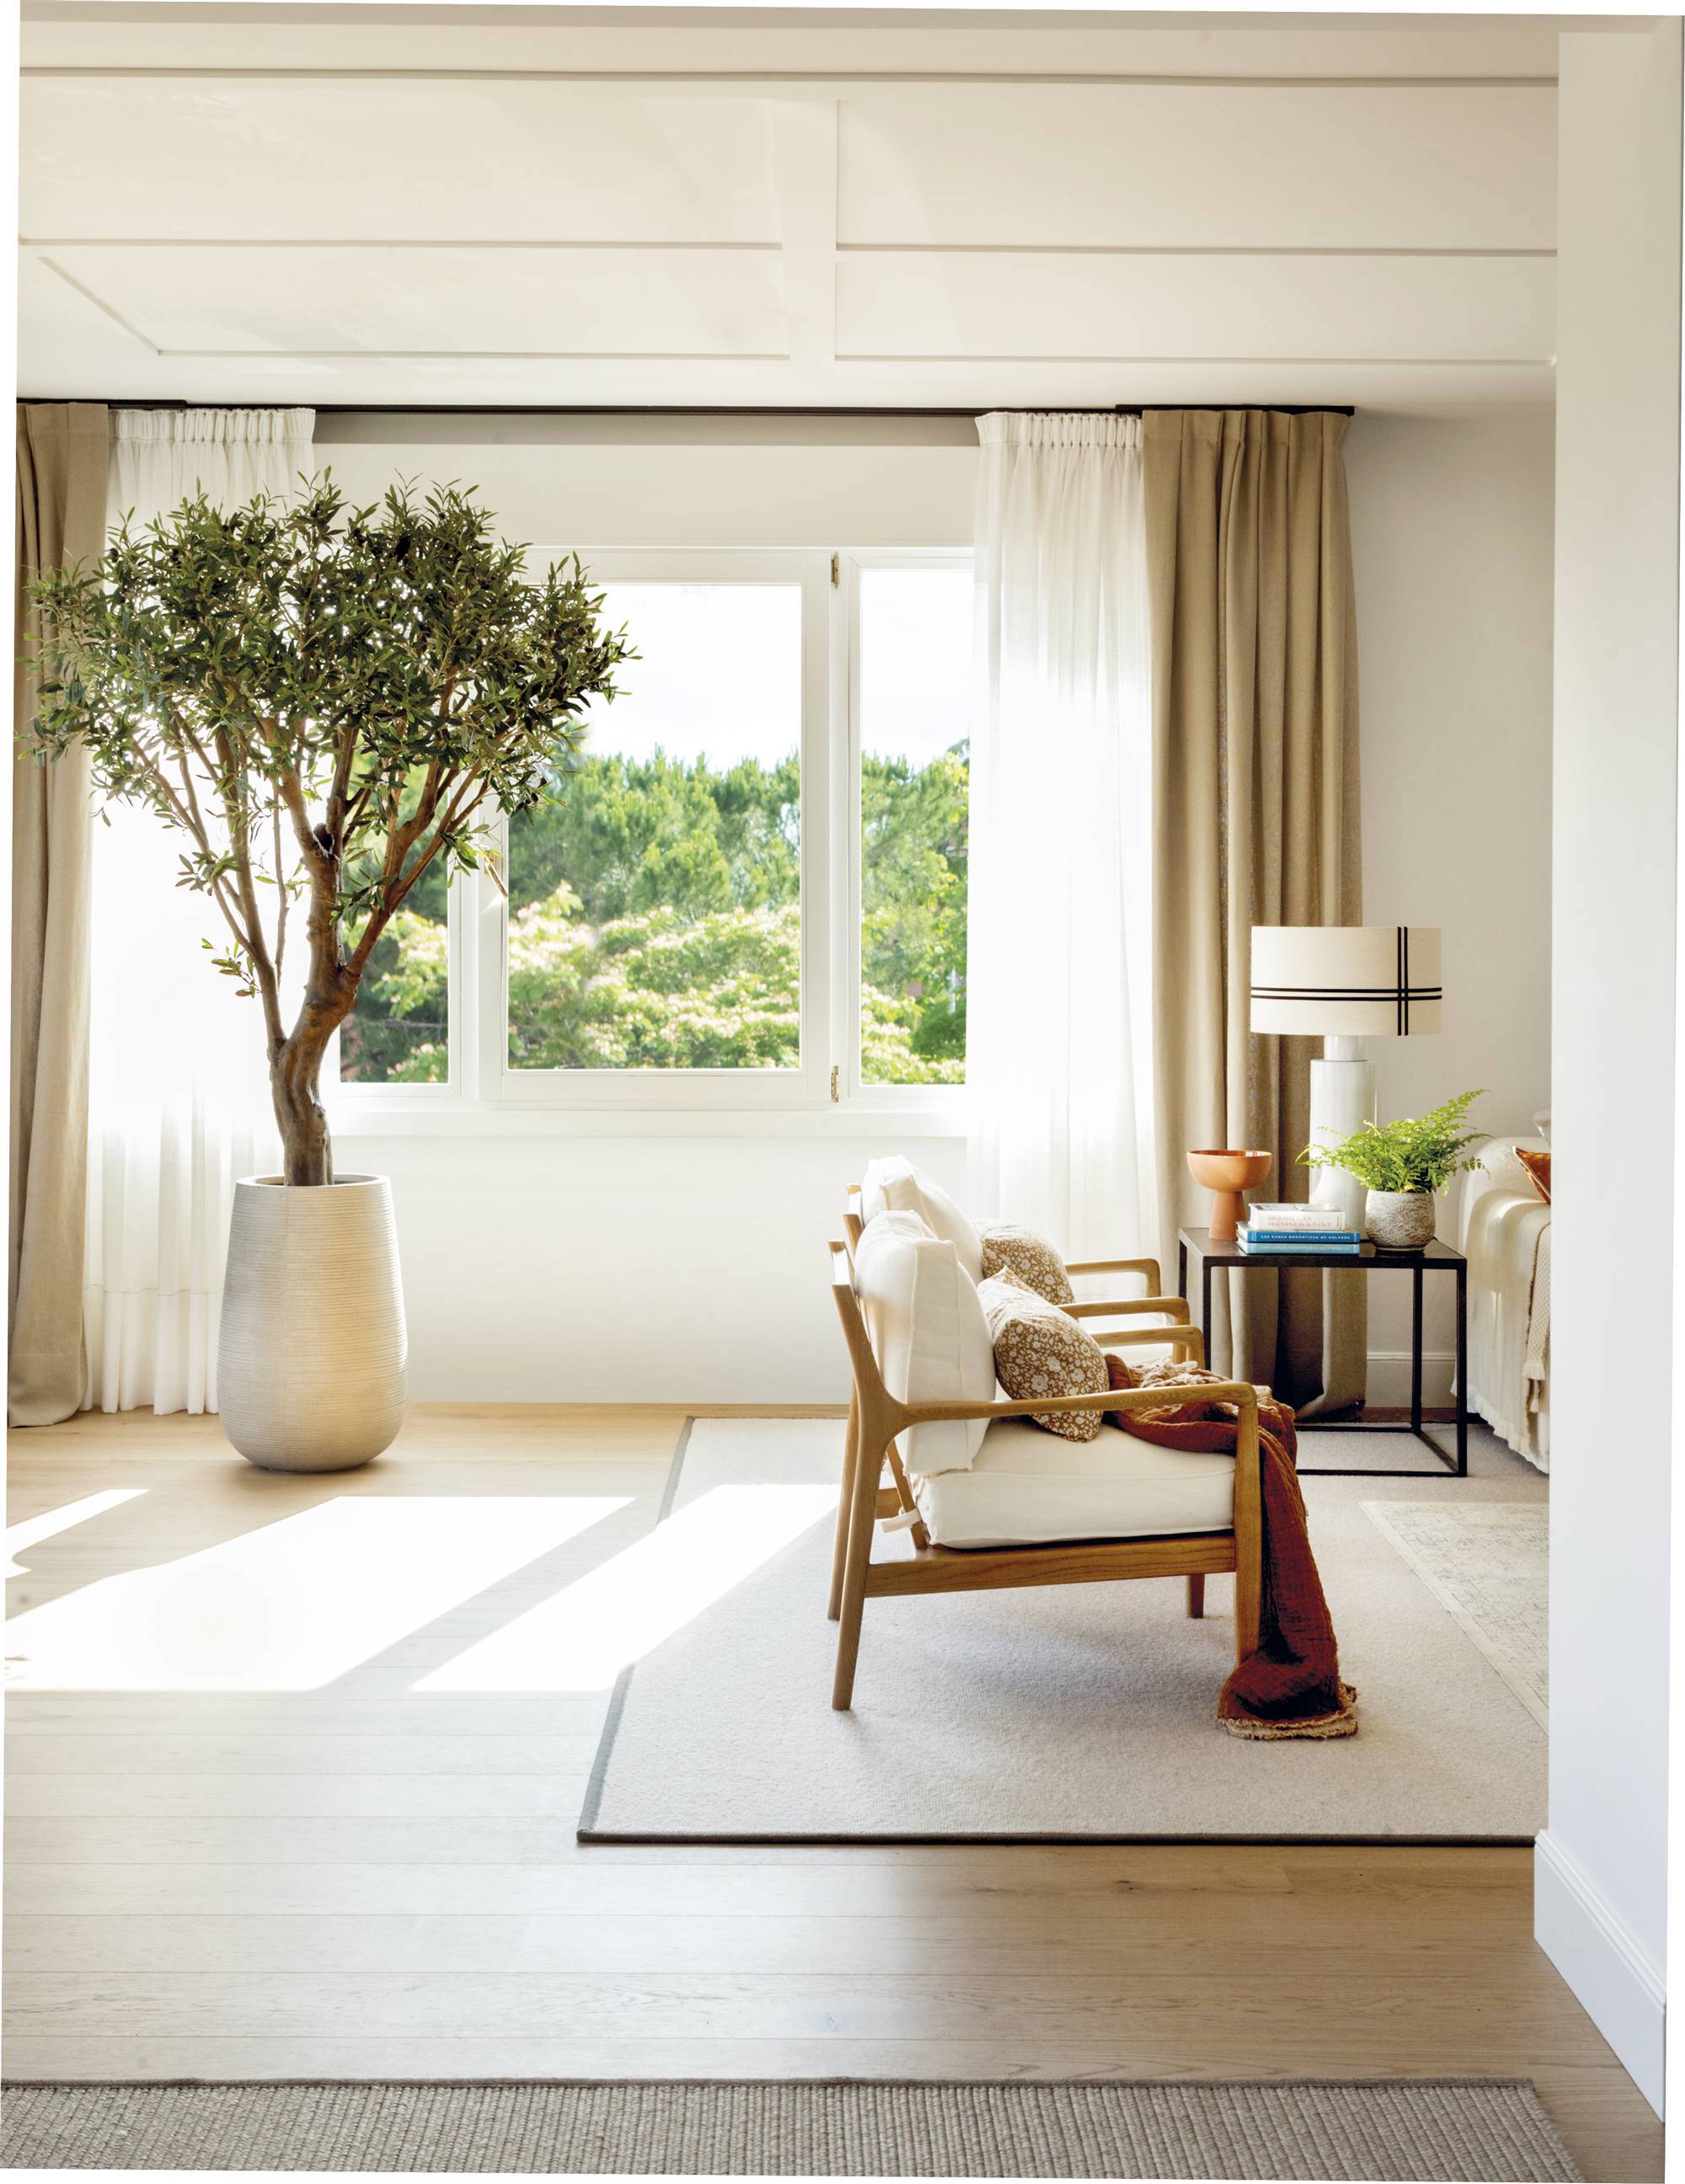 Salón con cortinas blancas y beige y árbol de interior.